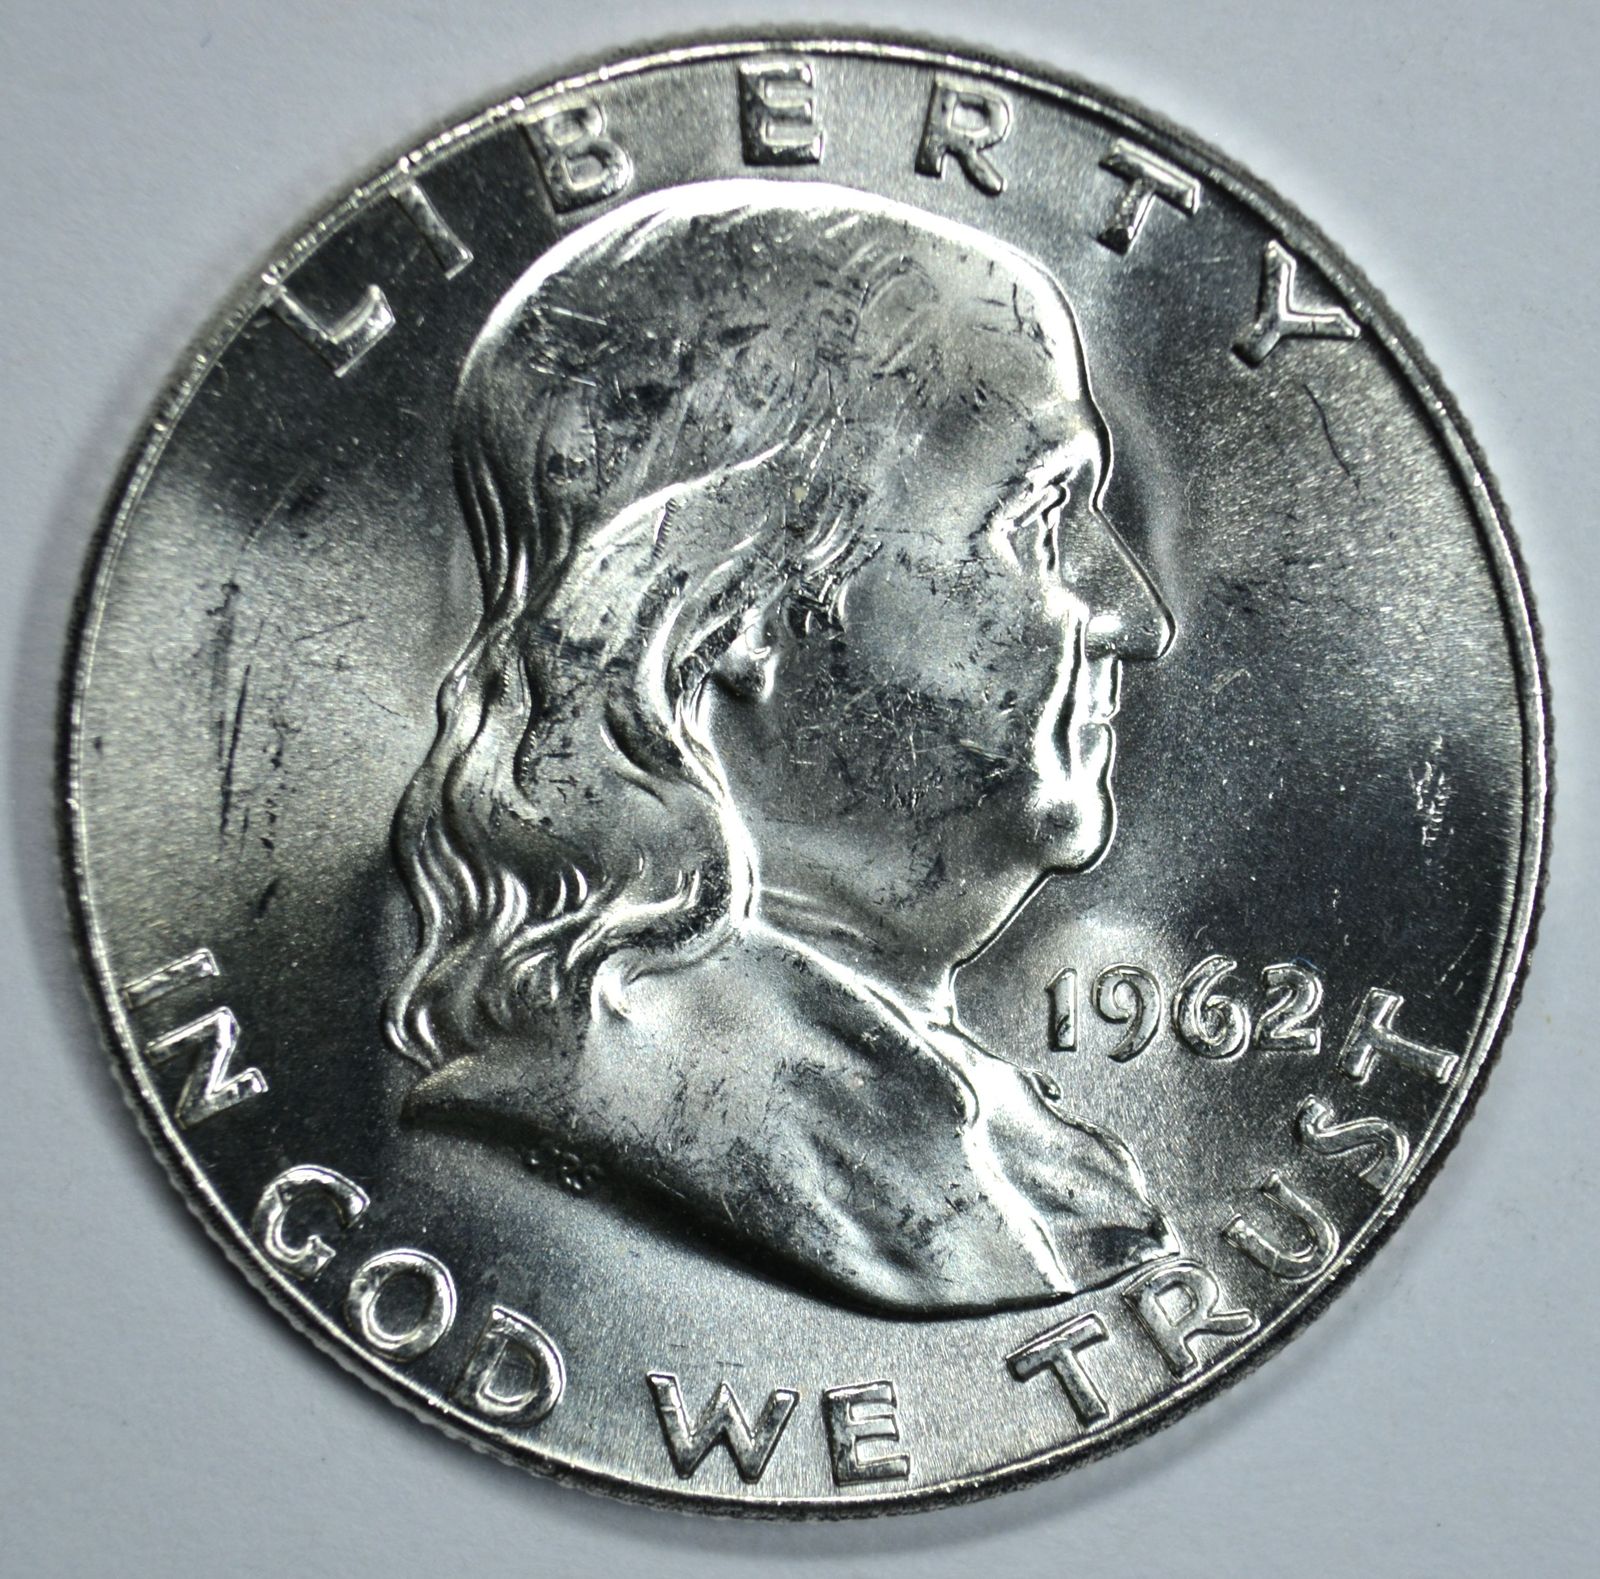 1962 P Franklin uncirculated silver half dollar BU - $23.00